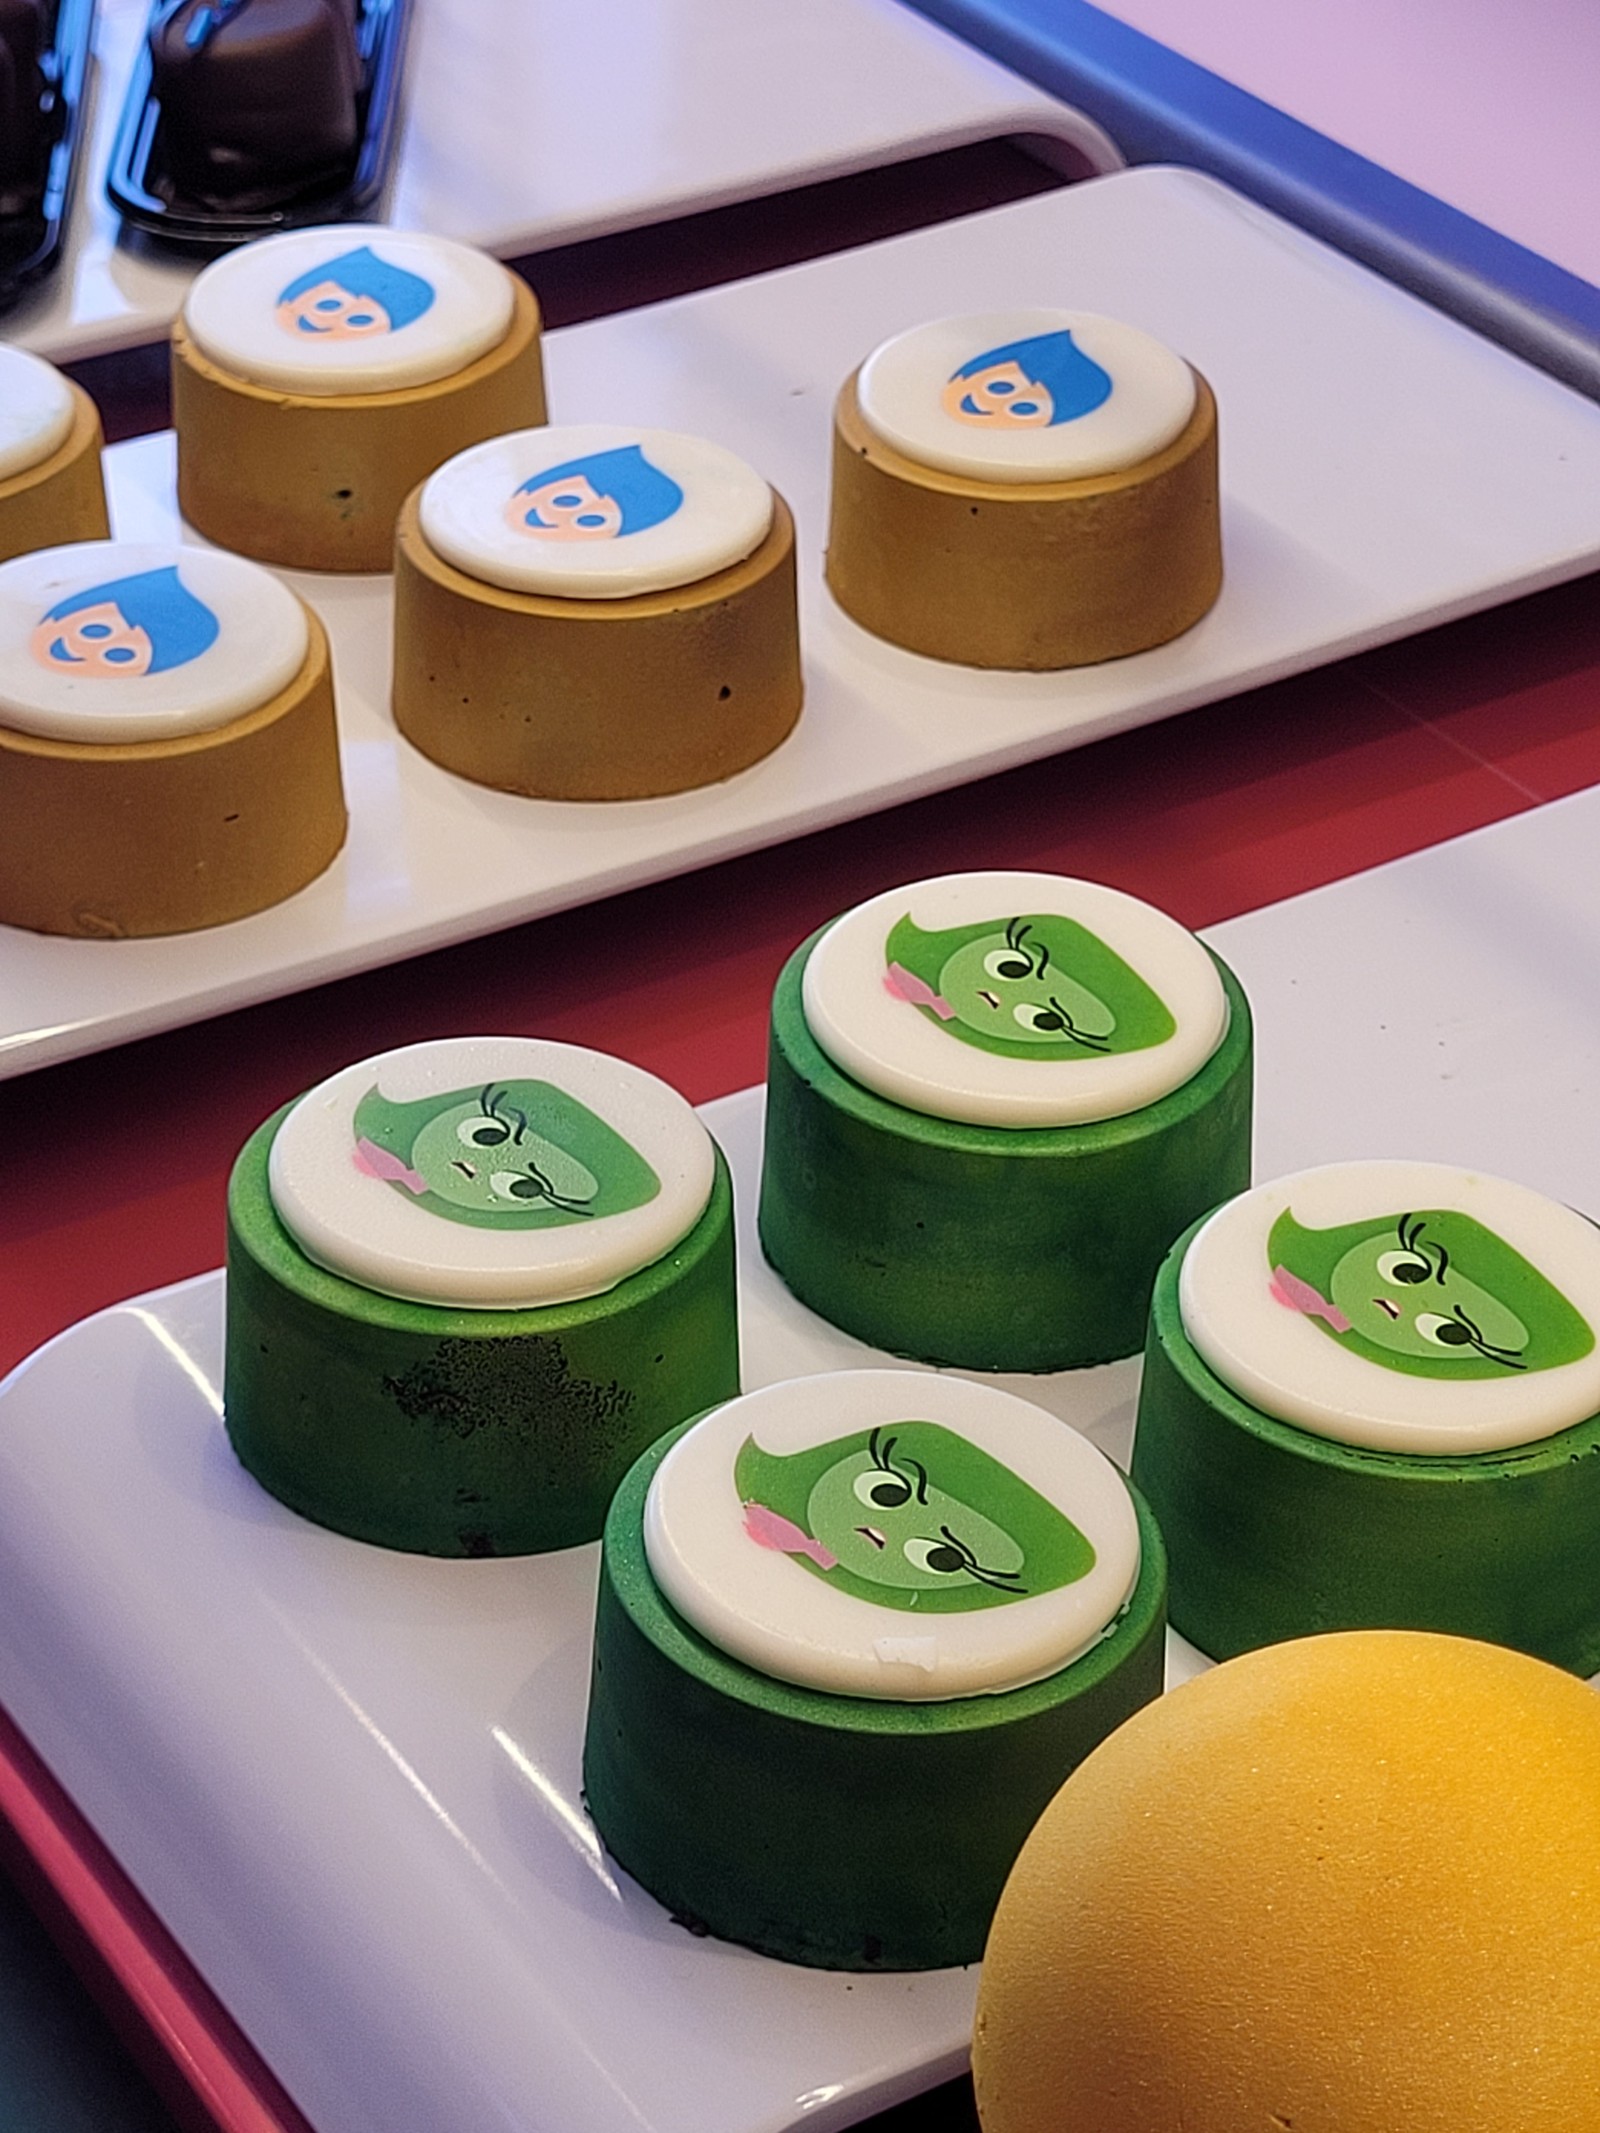 Para fãs do estúdio Pixar, a loja Joyful Sweets vende doces e sorvetes inspirados na animação 'Divertidamente'